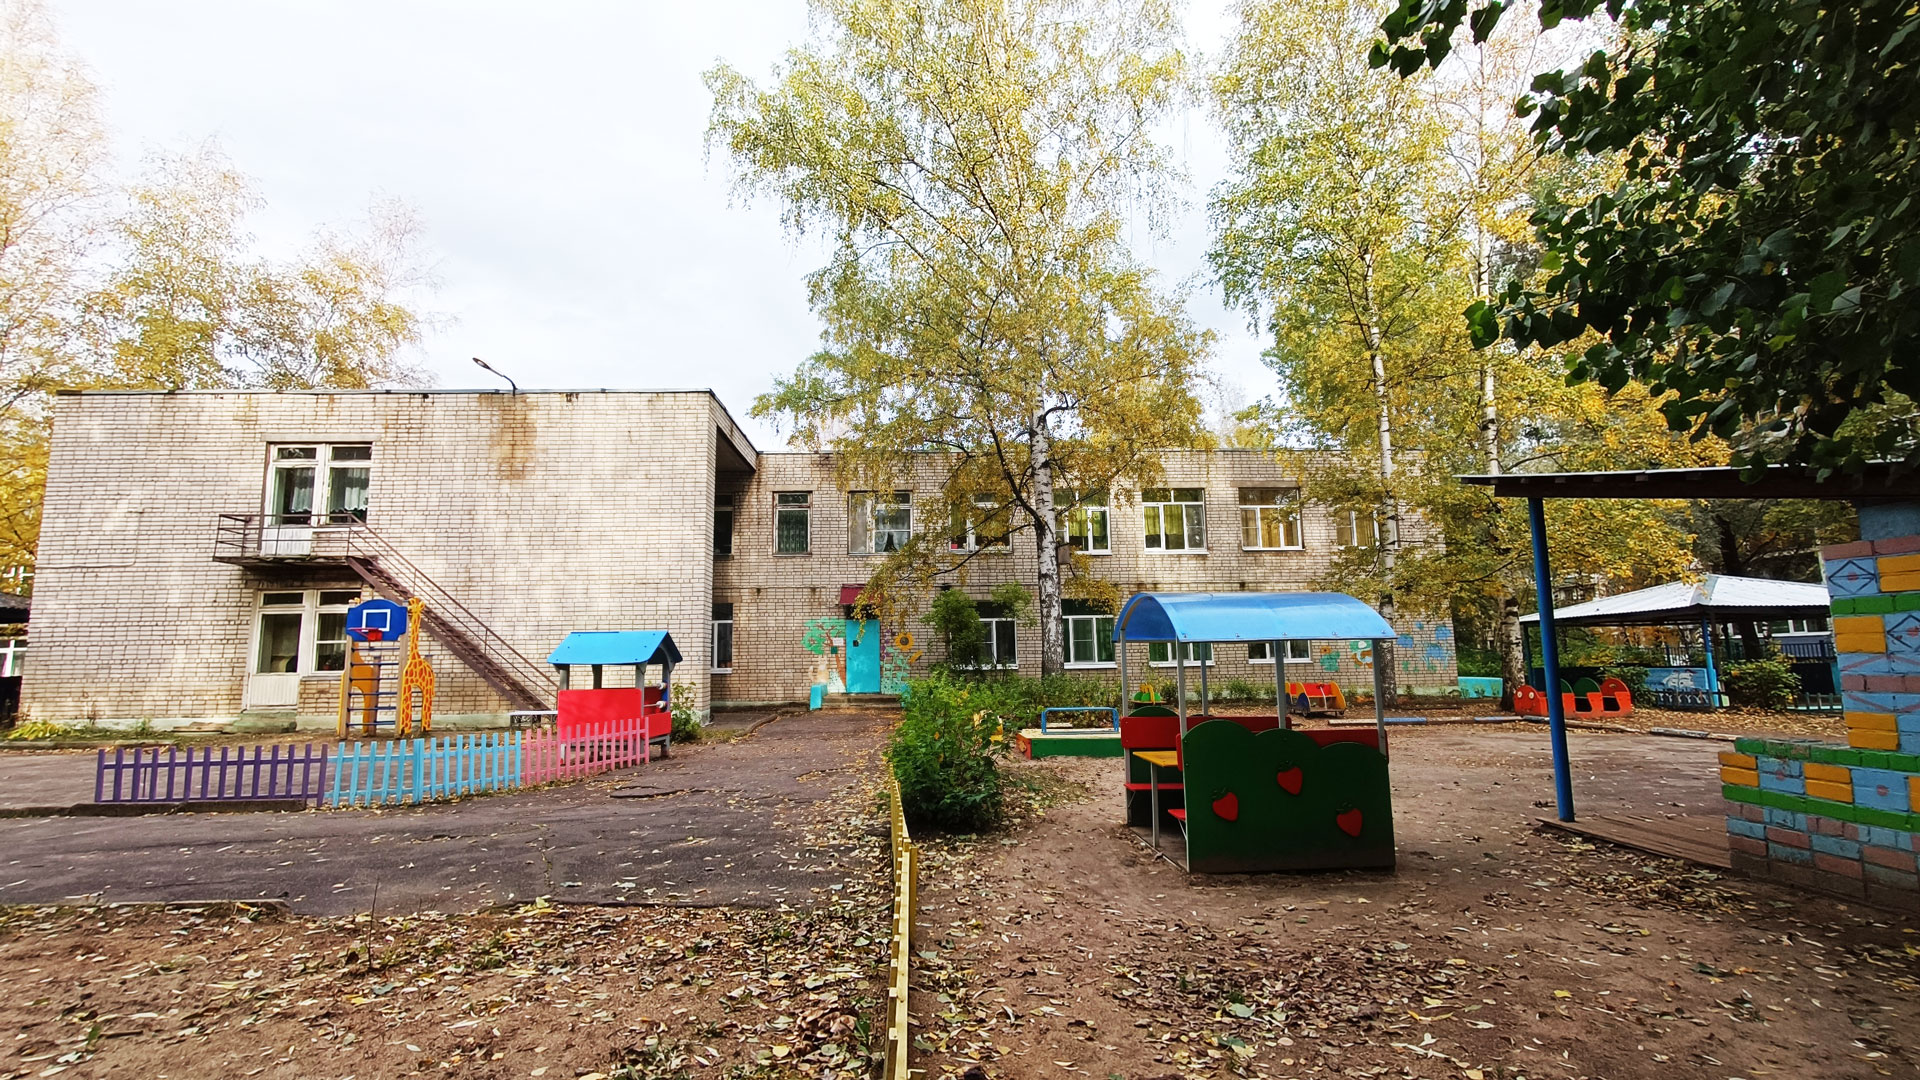 Детский сад 91 Ярославль: общий вид здания.